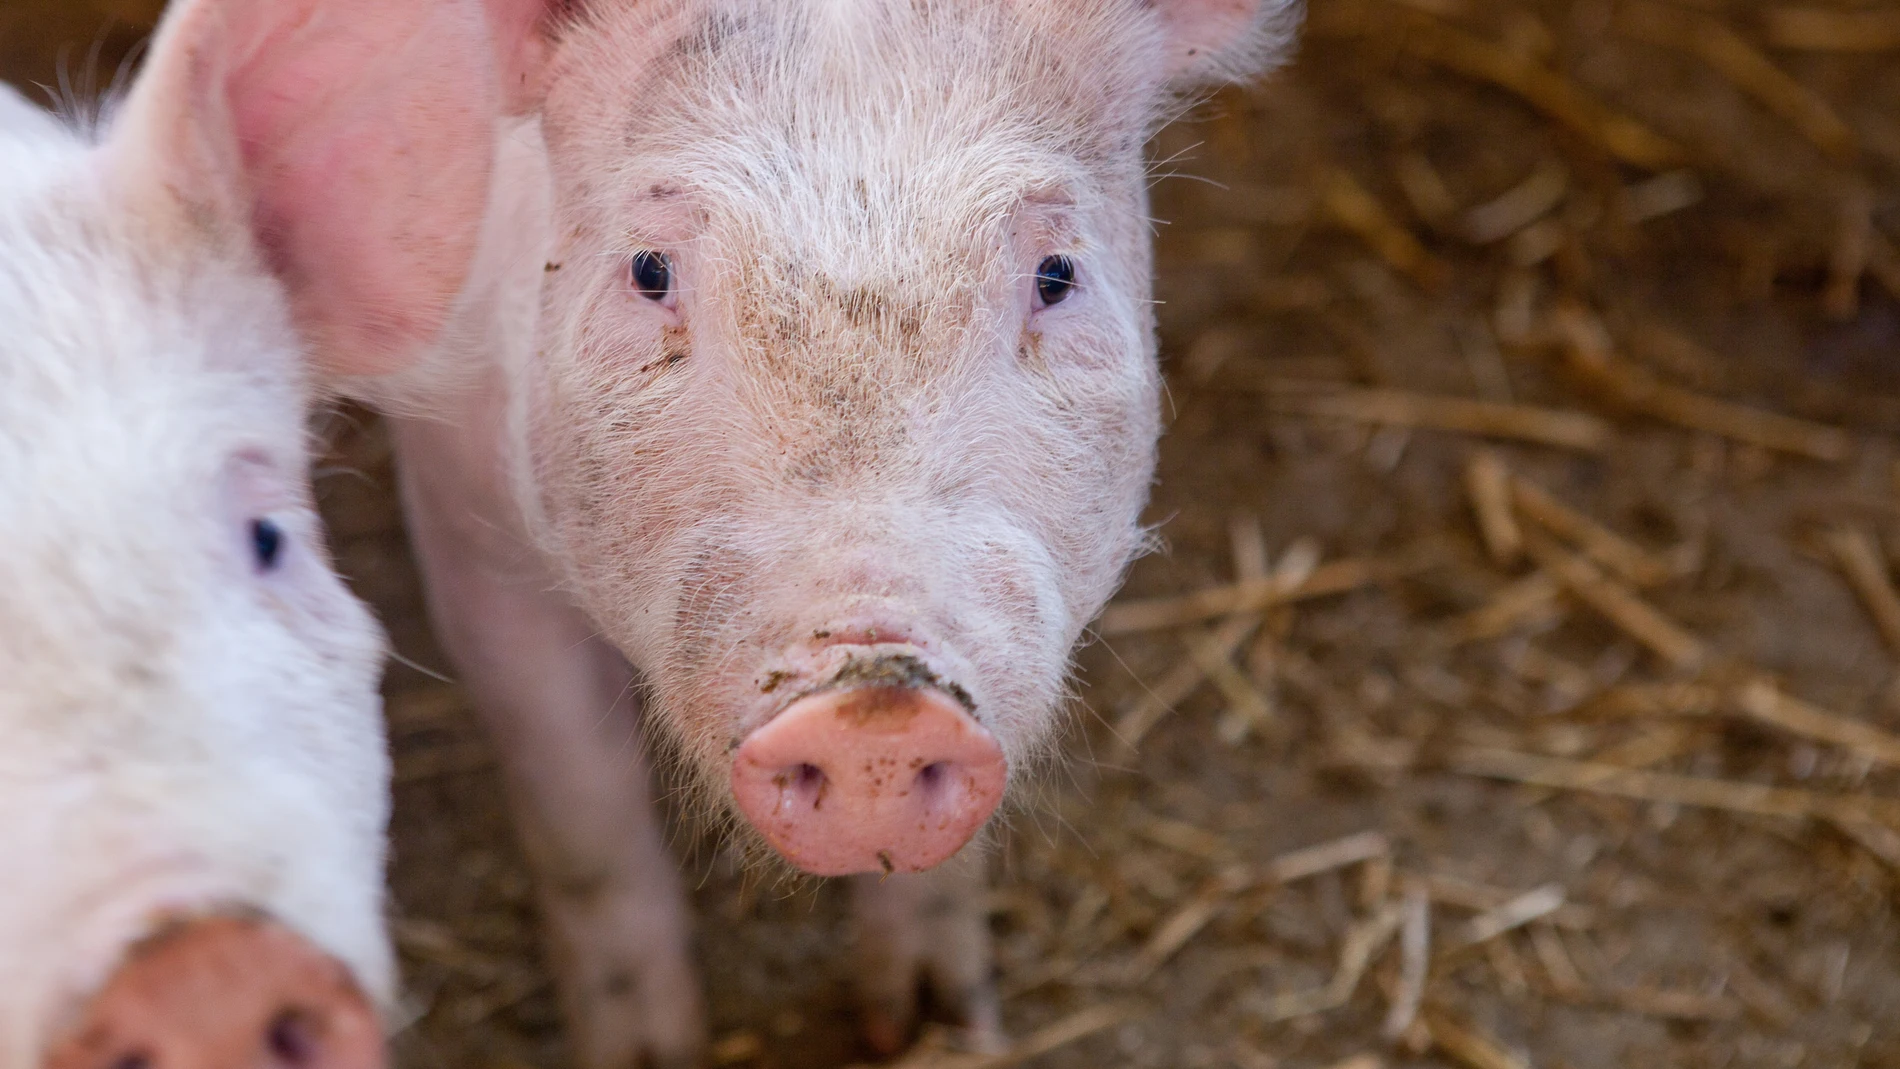 El juzgado admite a trámite la denuncia contra una granja de cerdos por maltrato animal